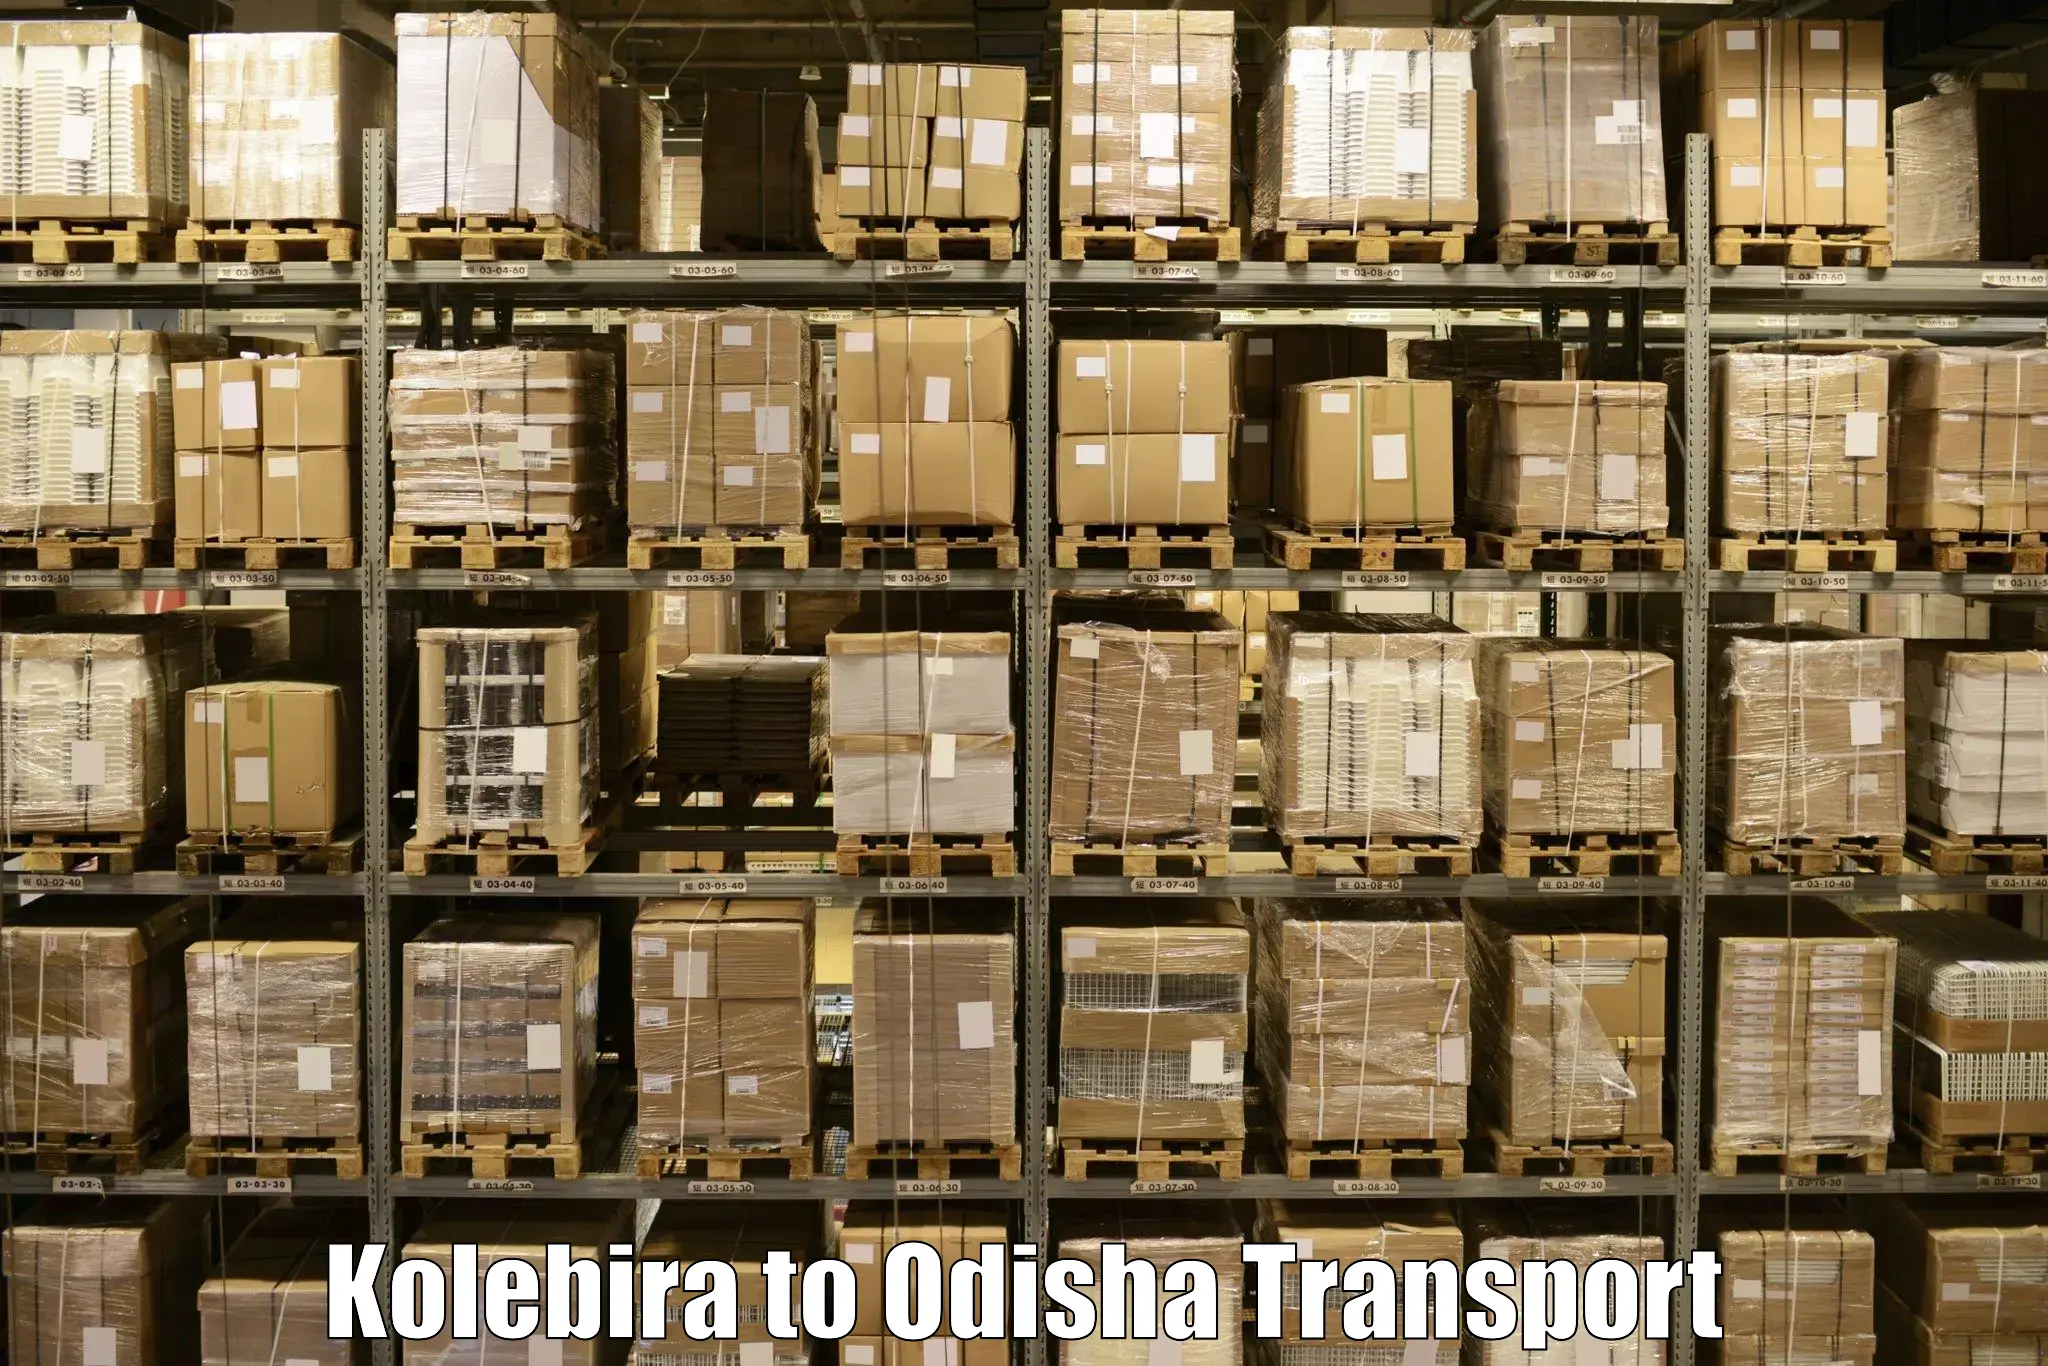 Nearest transport service Kolebira to Koraput